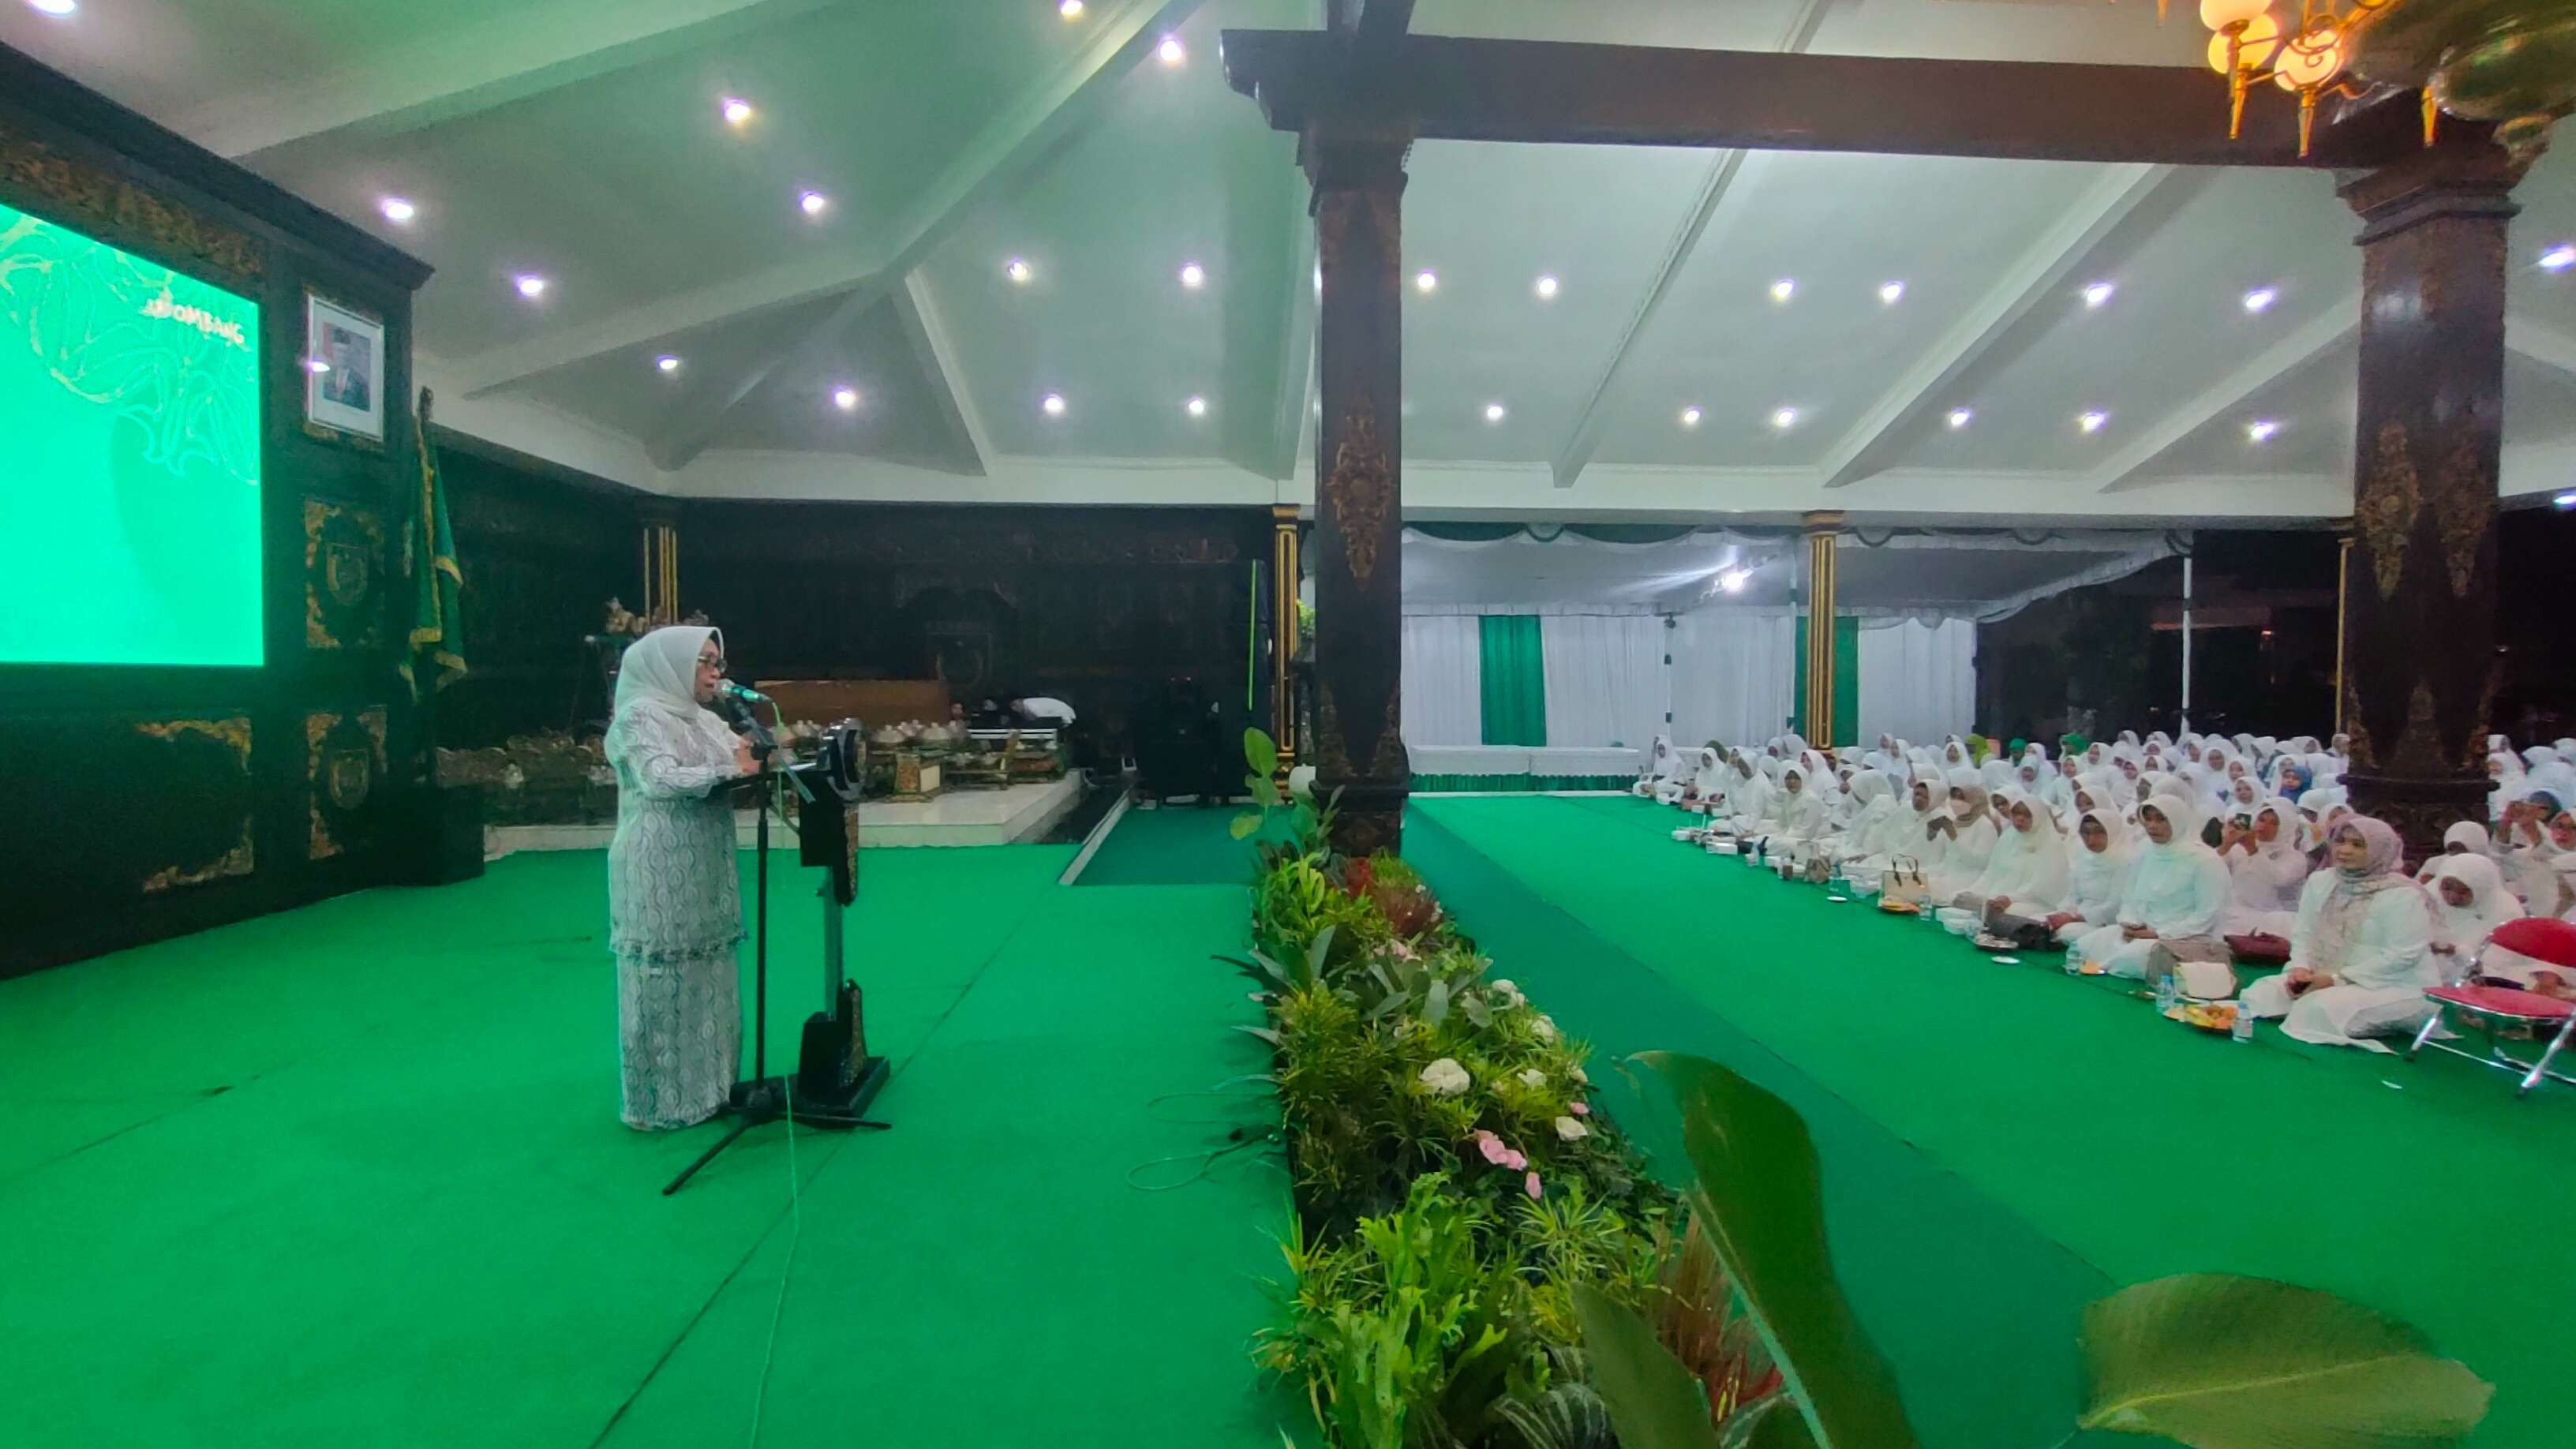 Pemerintah Kabupaten Jombang menyelenggarakan tasyakuran sebagai wujud rasa syukur atas suksesnya acara Harlah 1 Abad NU di Sidoarjo. Acara ini digelar di pendopo, Jumat 10 Februari 2023 malam. (Foto: Istimewa)